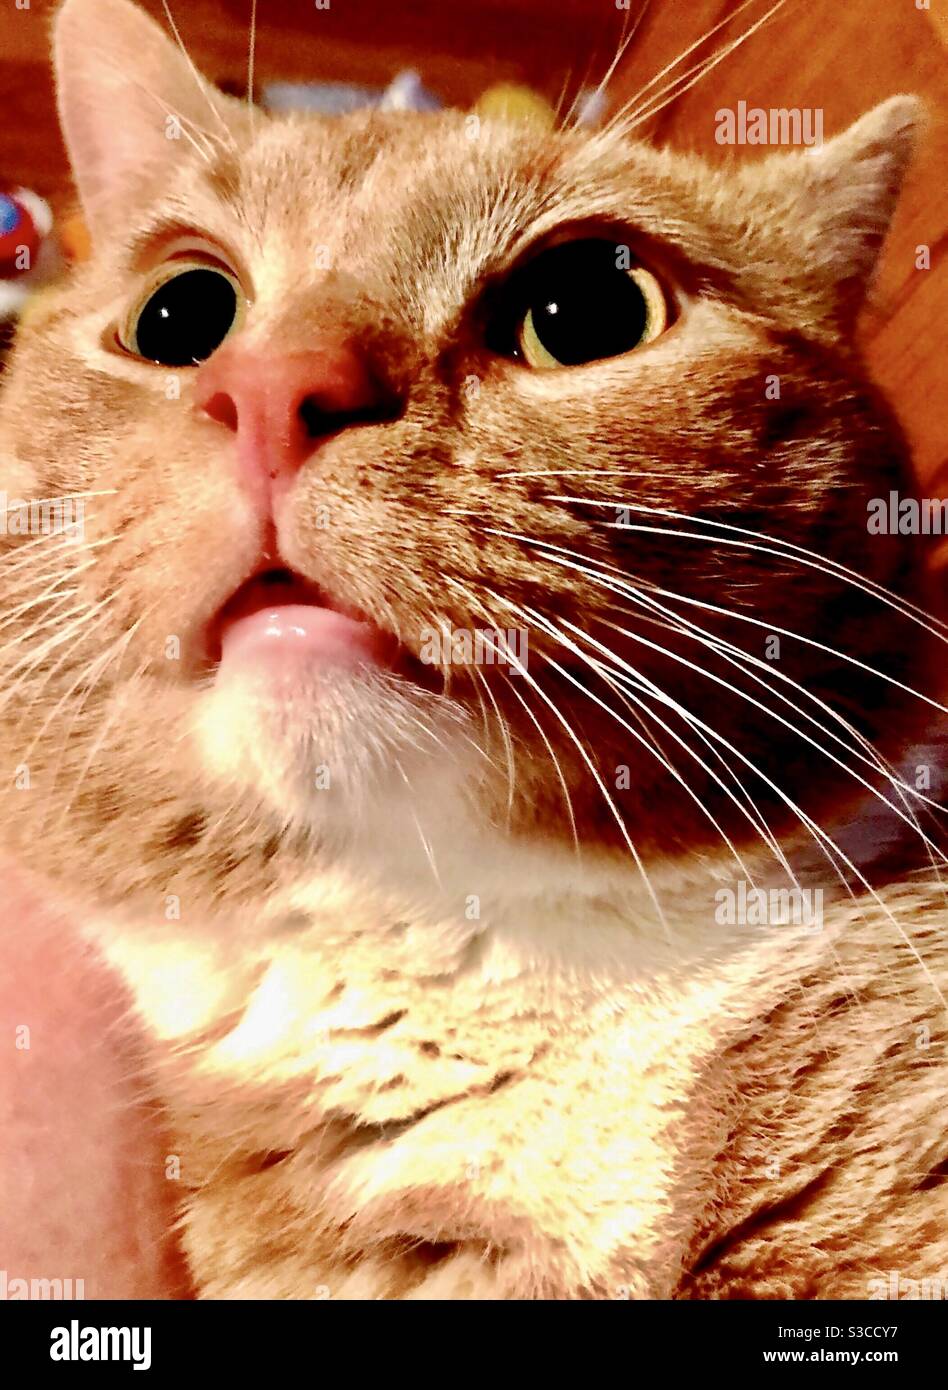 Closeup ritratto di bel gatto tabby maschio arancione e bianco con gli occhi dorati o ambra, gattino di salvataggio neutro Foto Stock